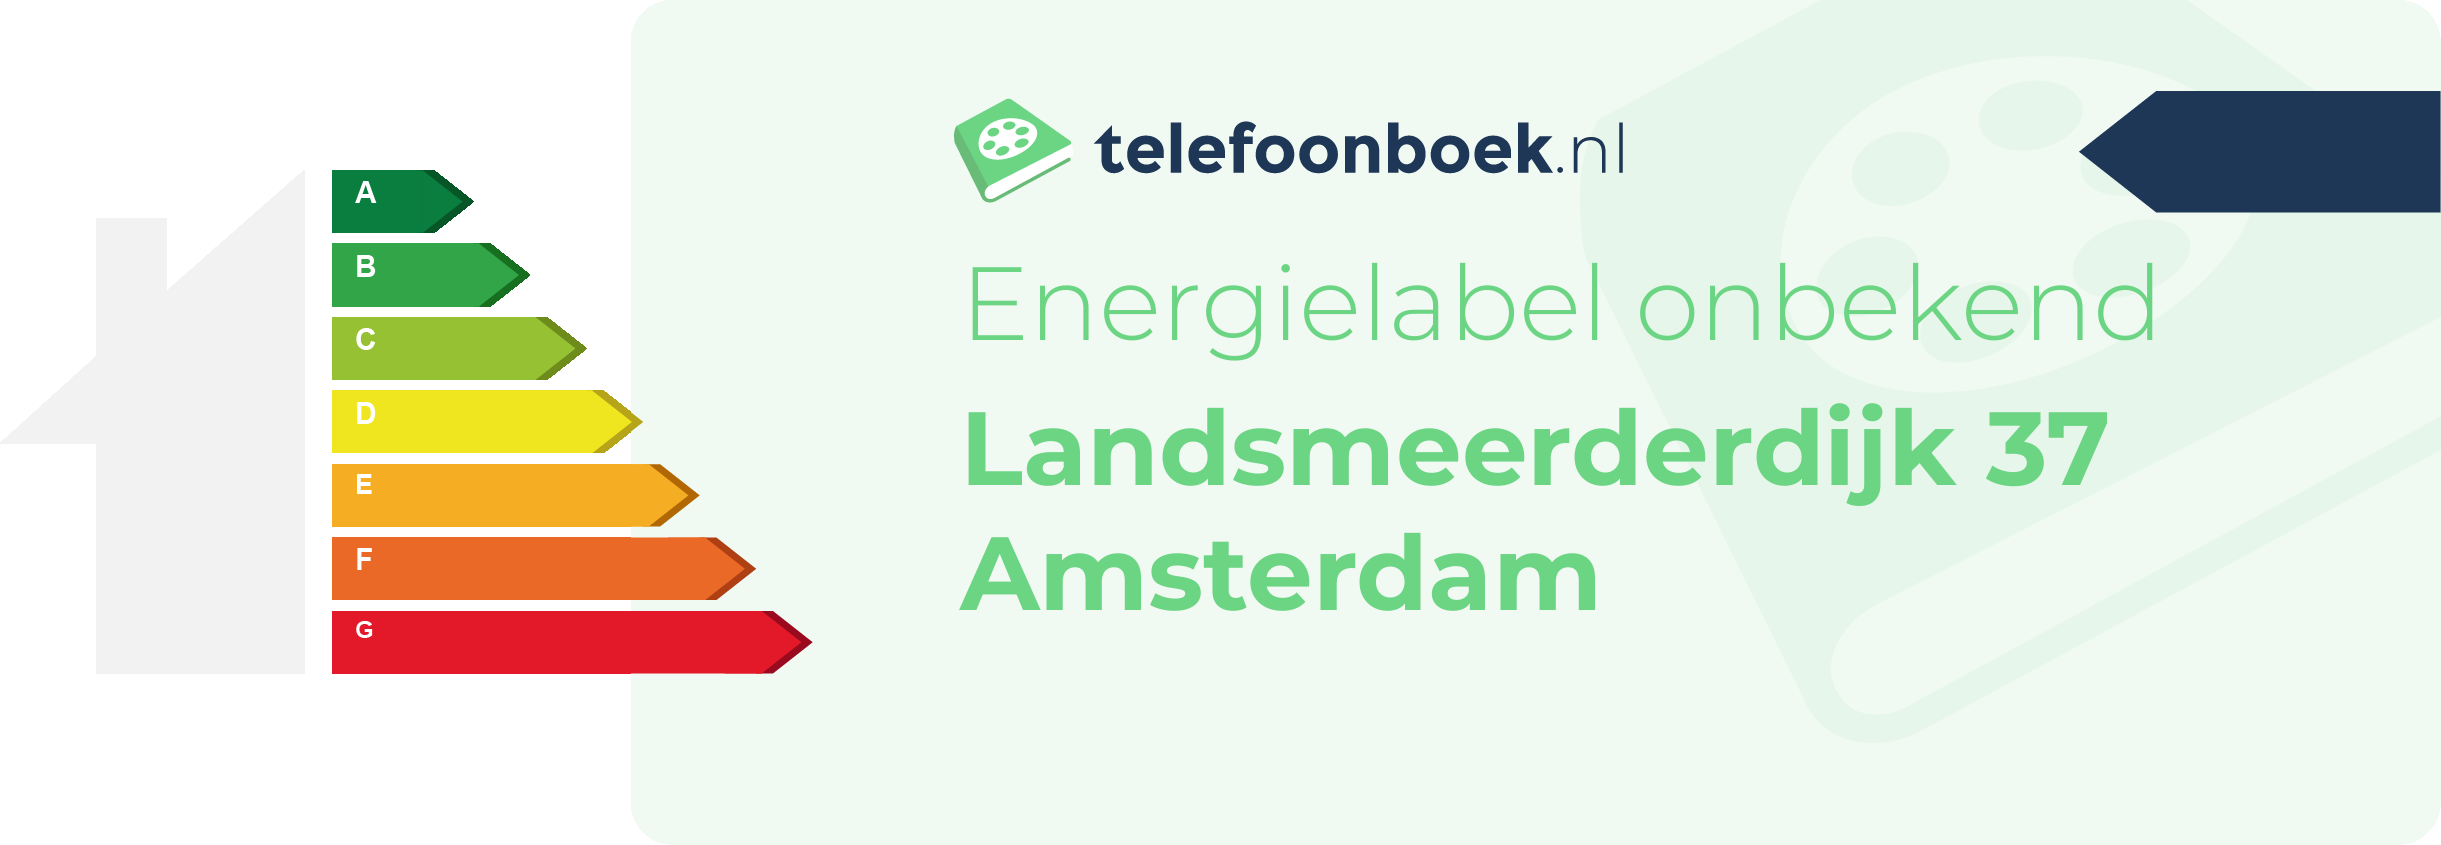 Energielabel Landsmeerderdijk 37 Amsterdam